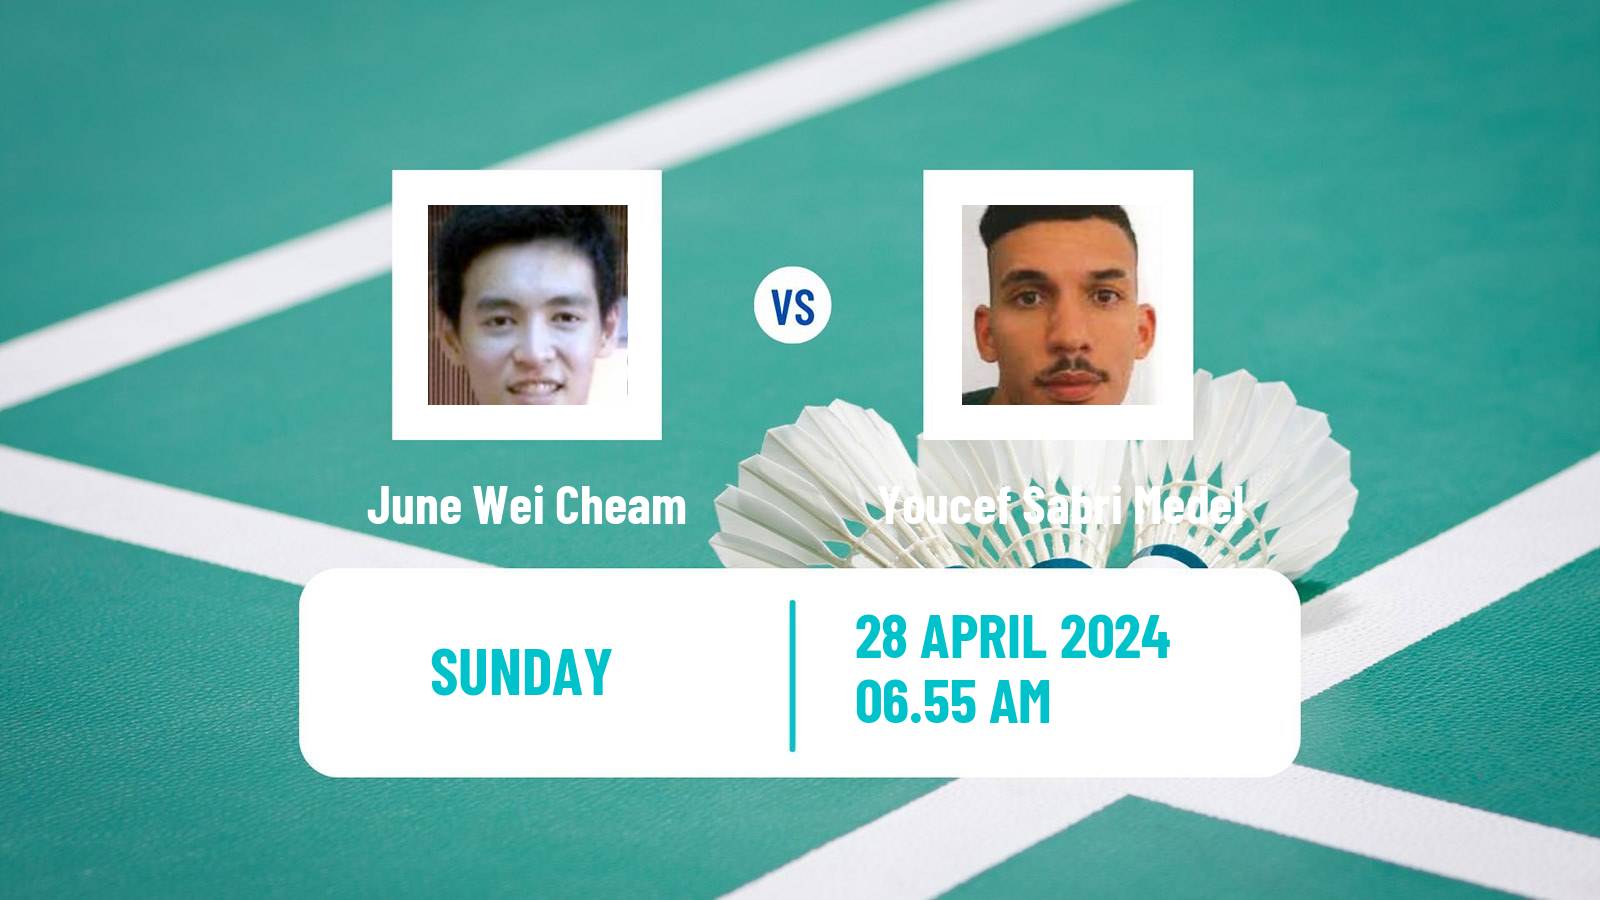 Badminton BWF Thomas Cup Men June Wei Cheam - Youcef Sabri Medel